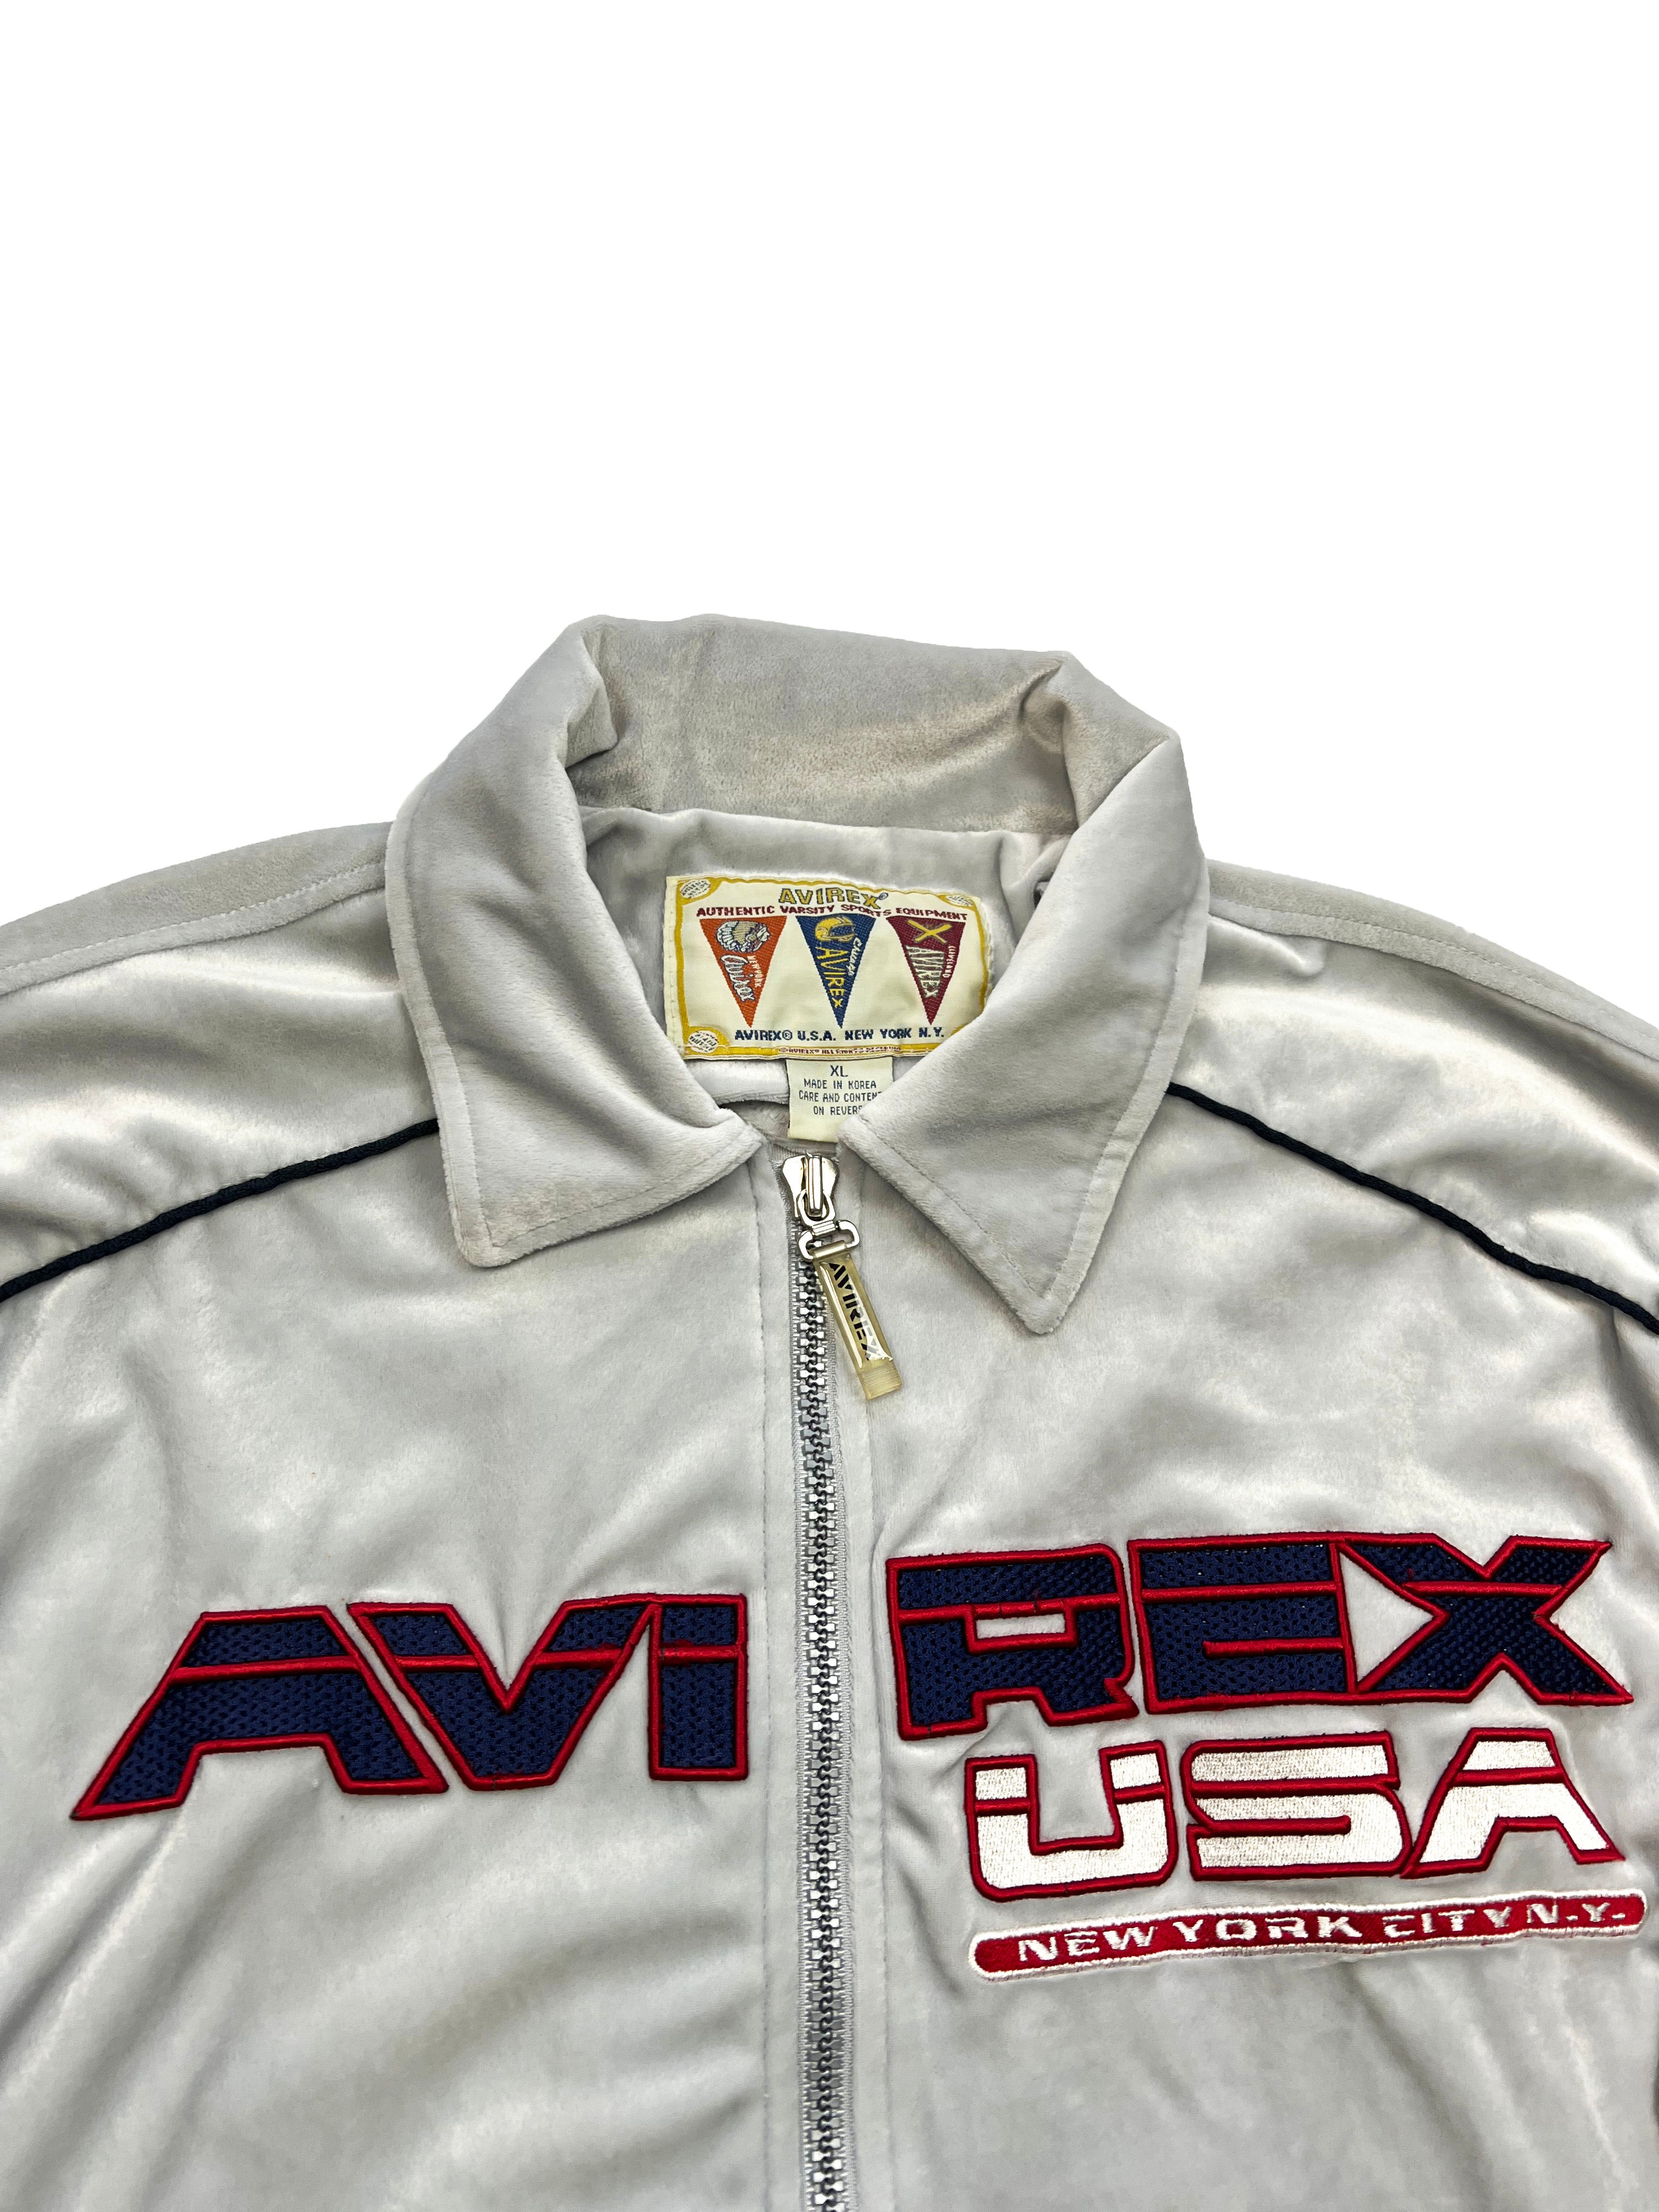 Avirex Velour Track Jacket 90's